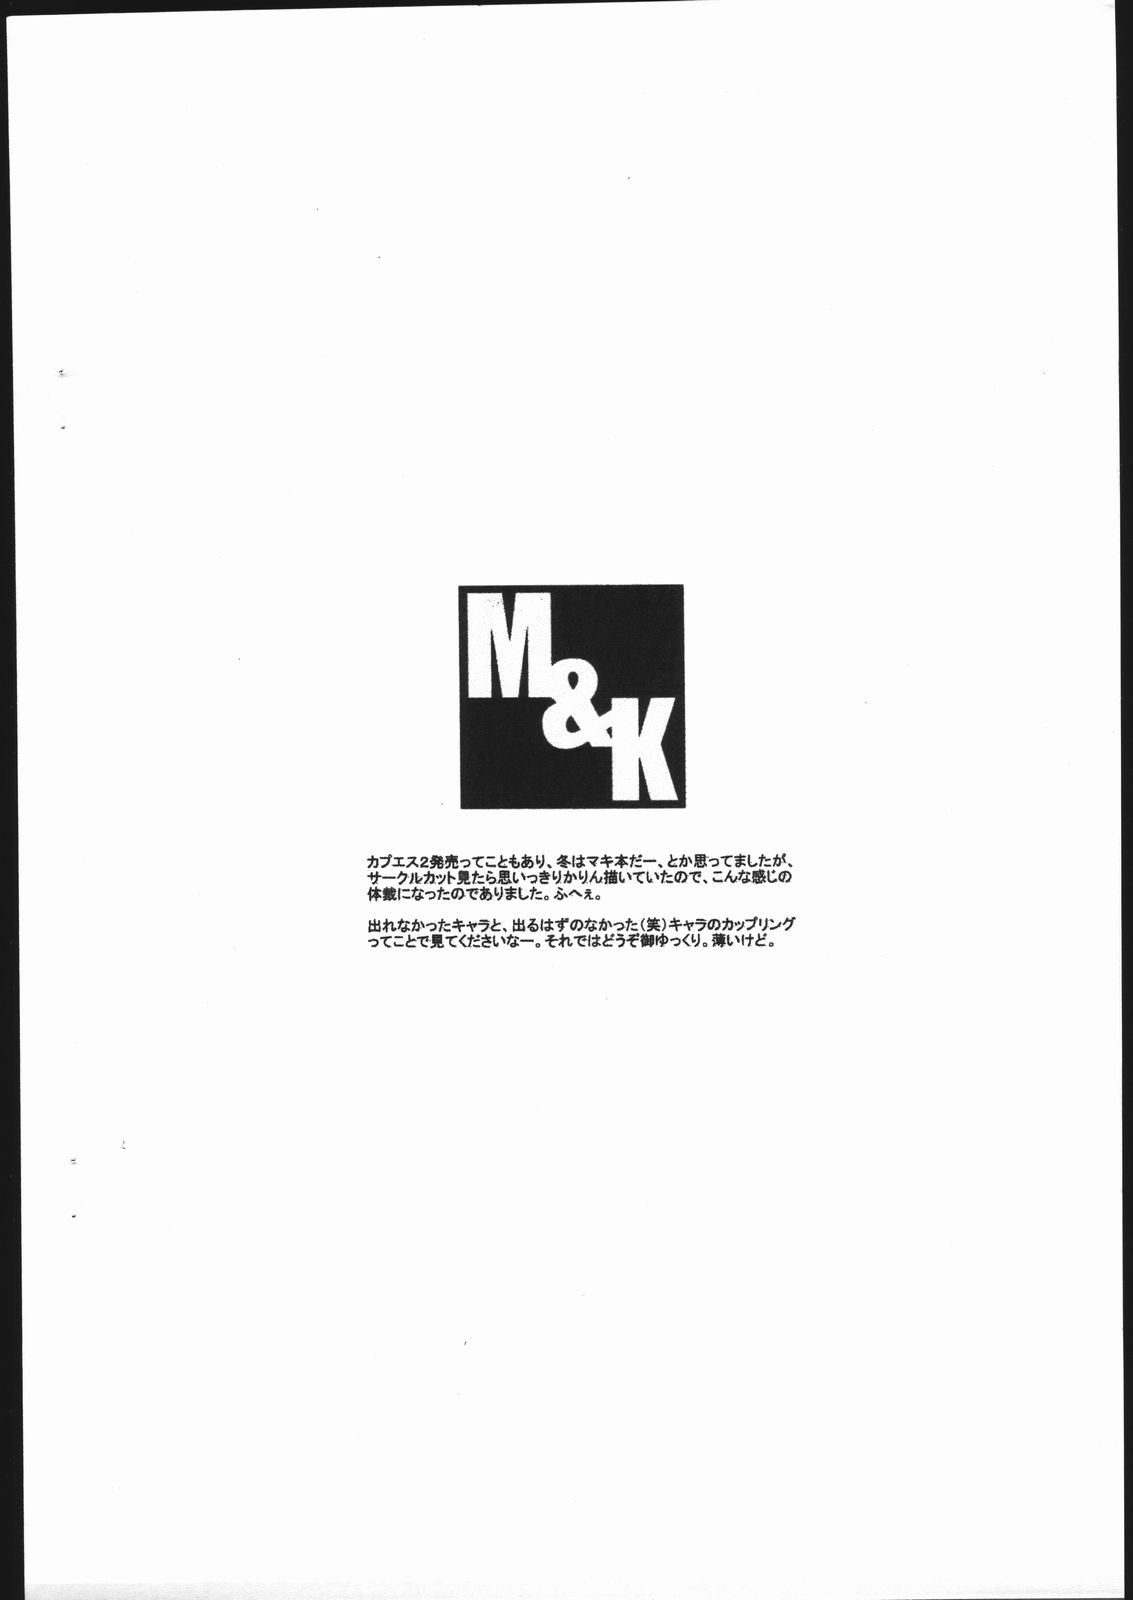 [Mushimusume Aikoukai] M&K (CAPCOM) page 4 full